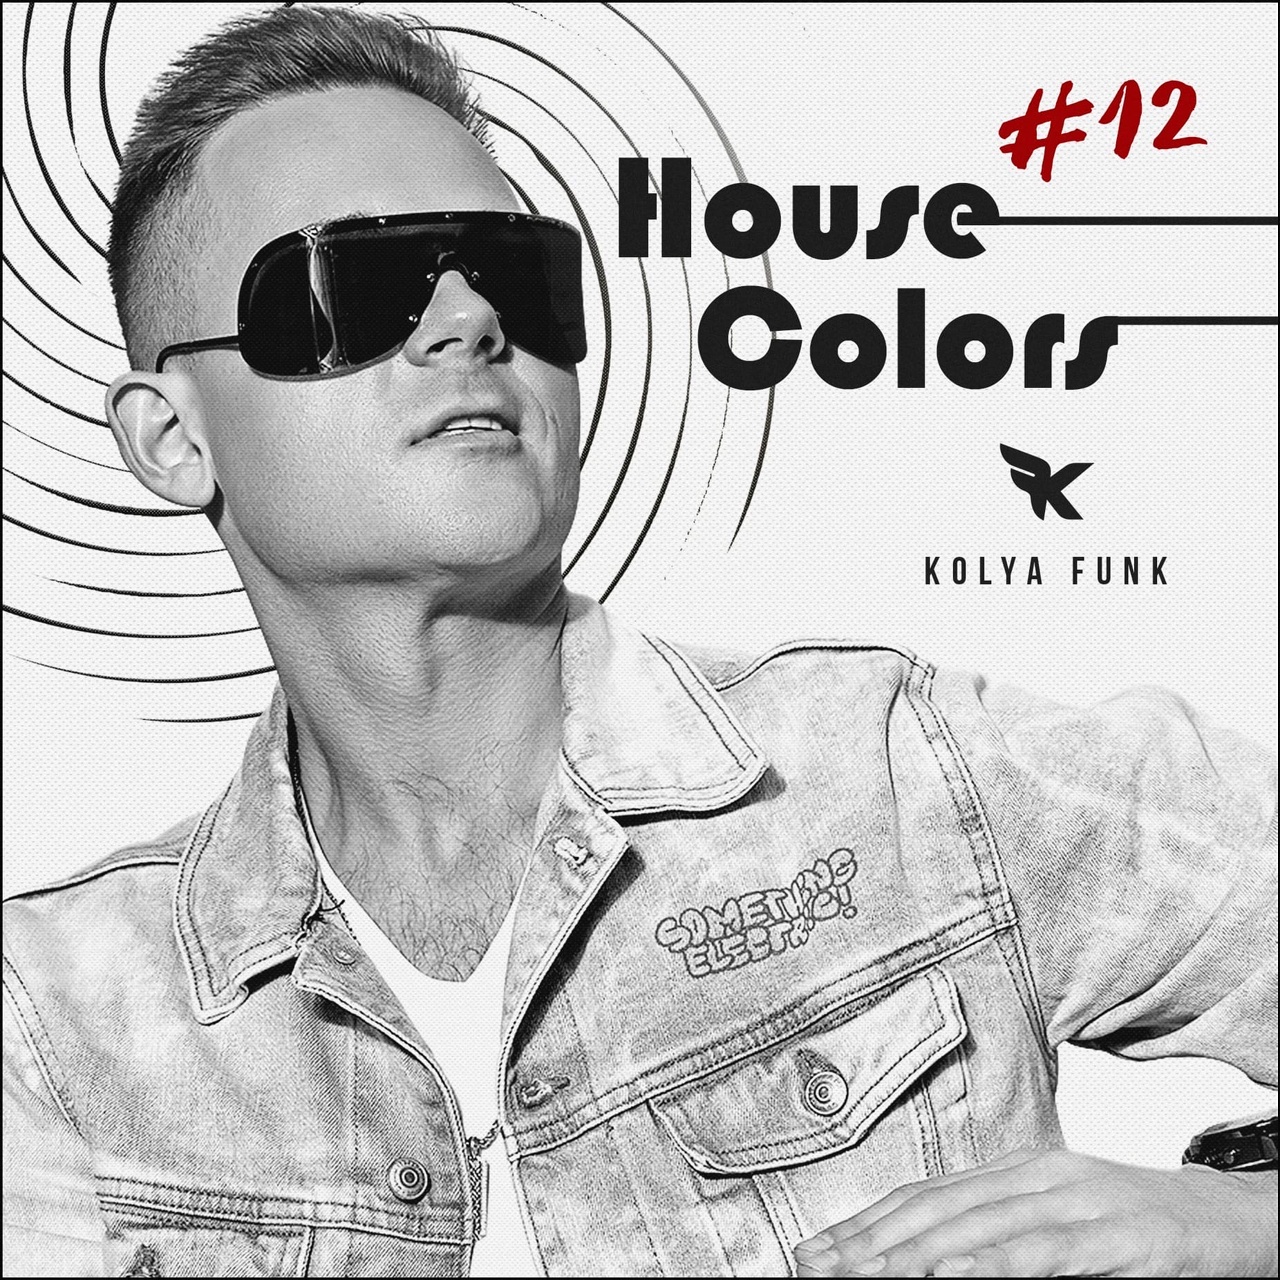 Luchdaich sìos Kolya Funk - House Colors #012